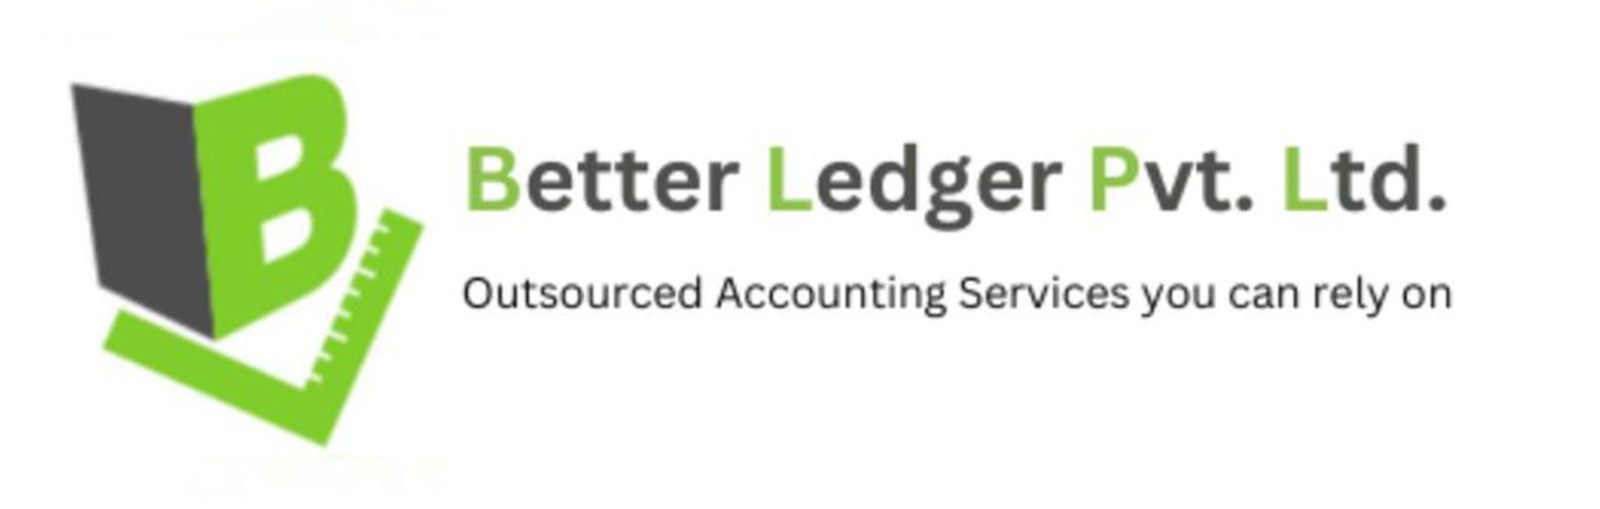 Better-Ledger